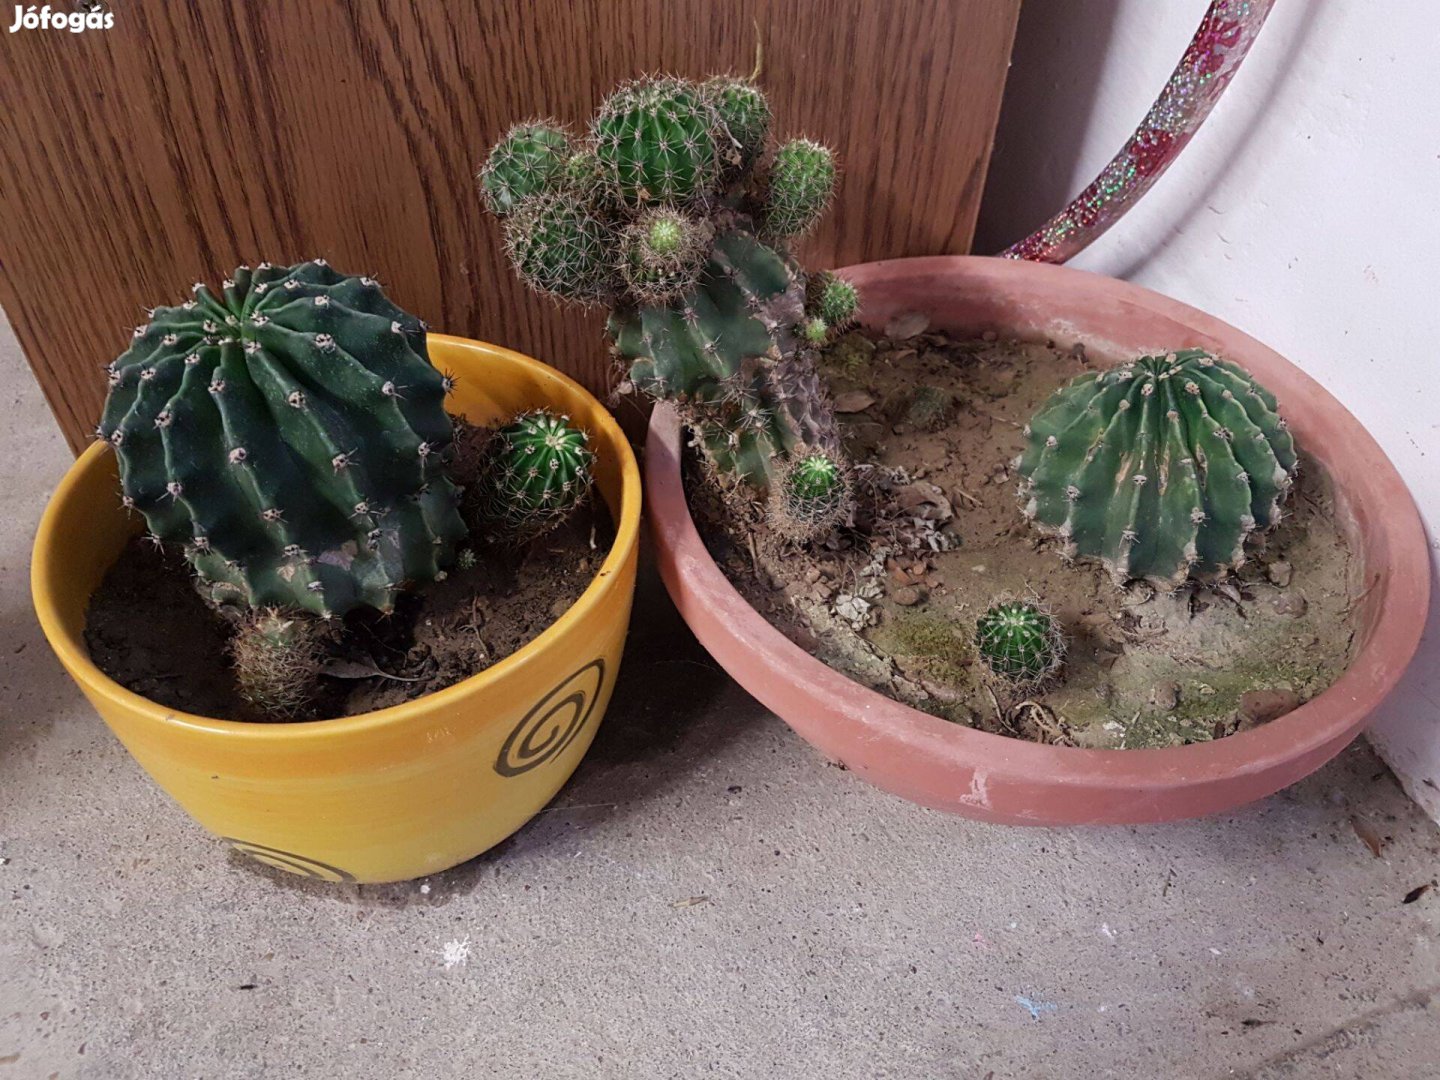 Eladó kaktuszok kaspóval